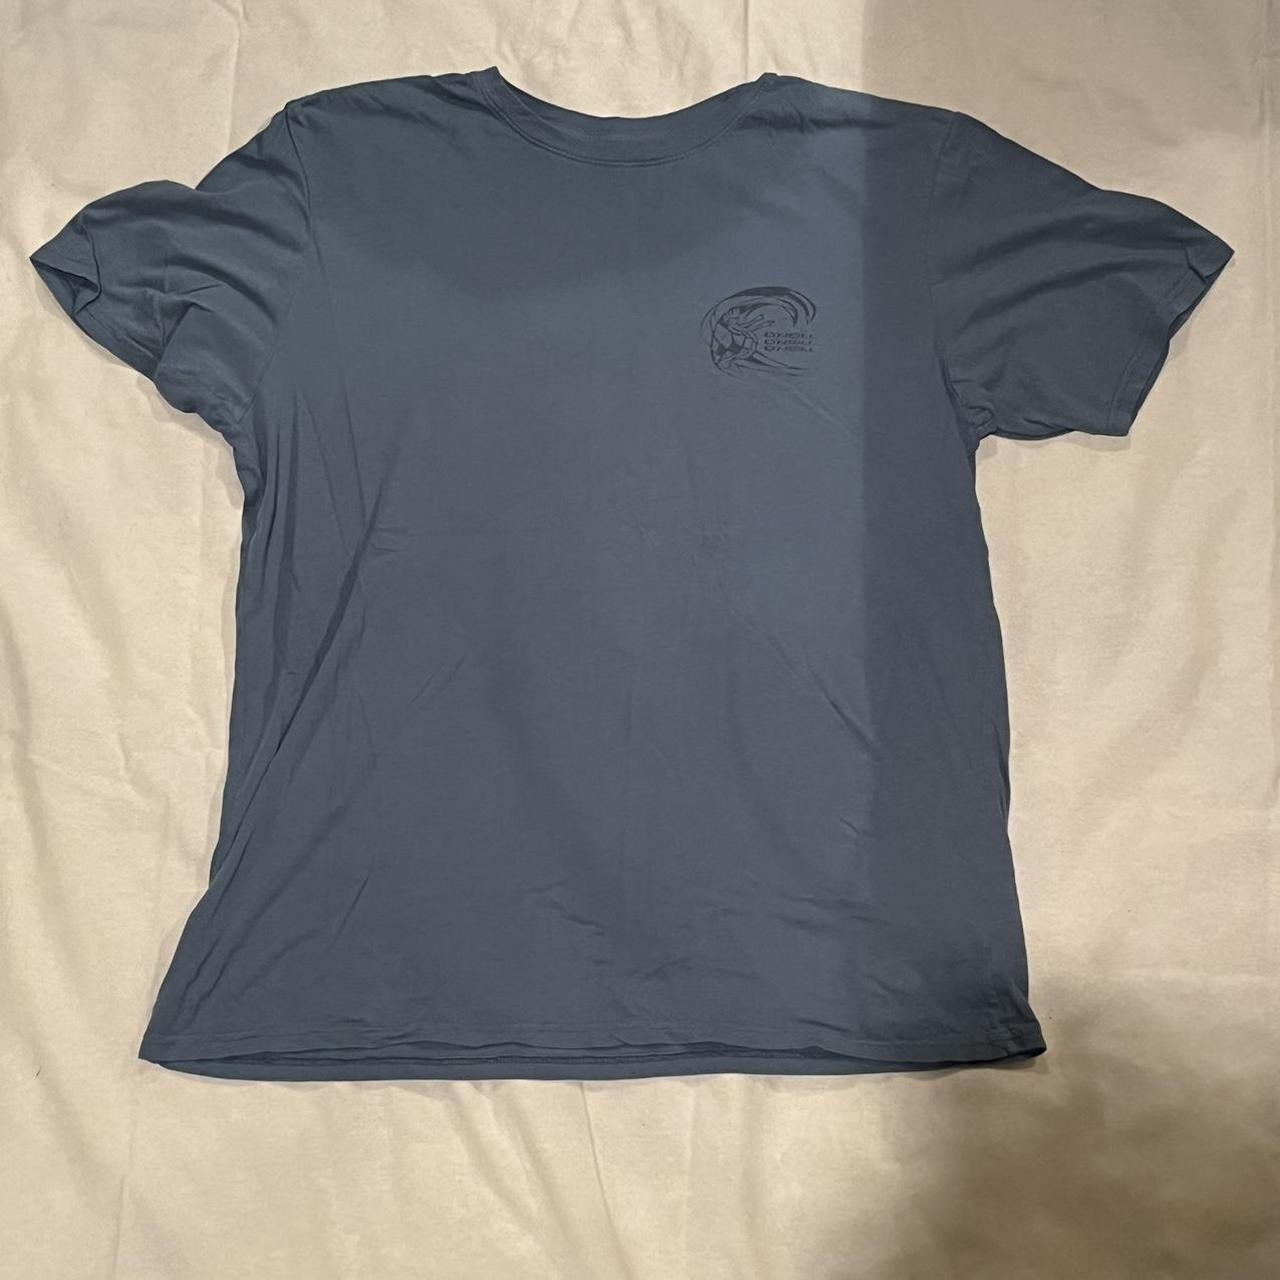 O'Neill Men's Blue T-shirt